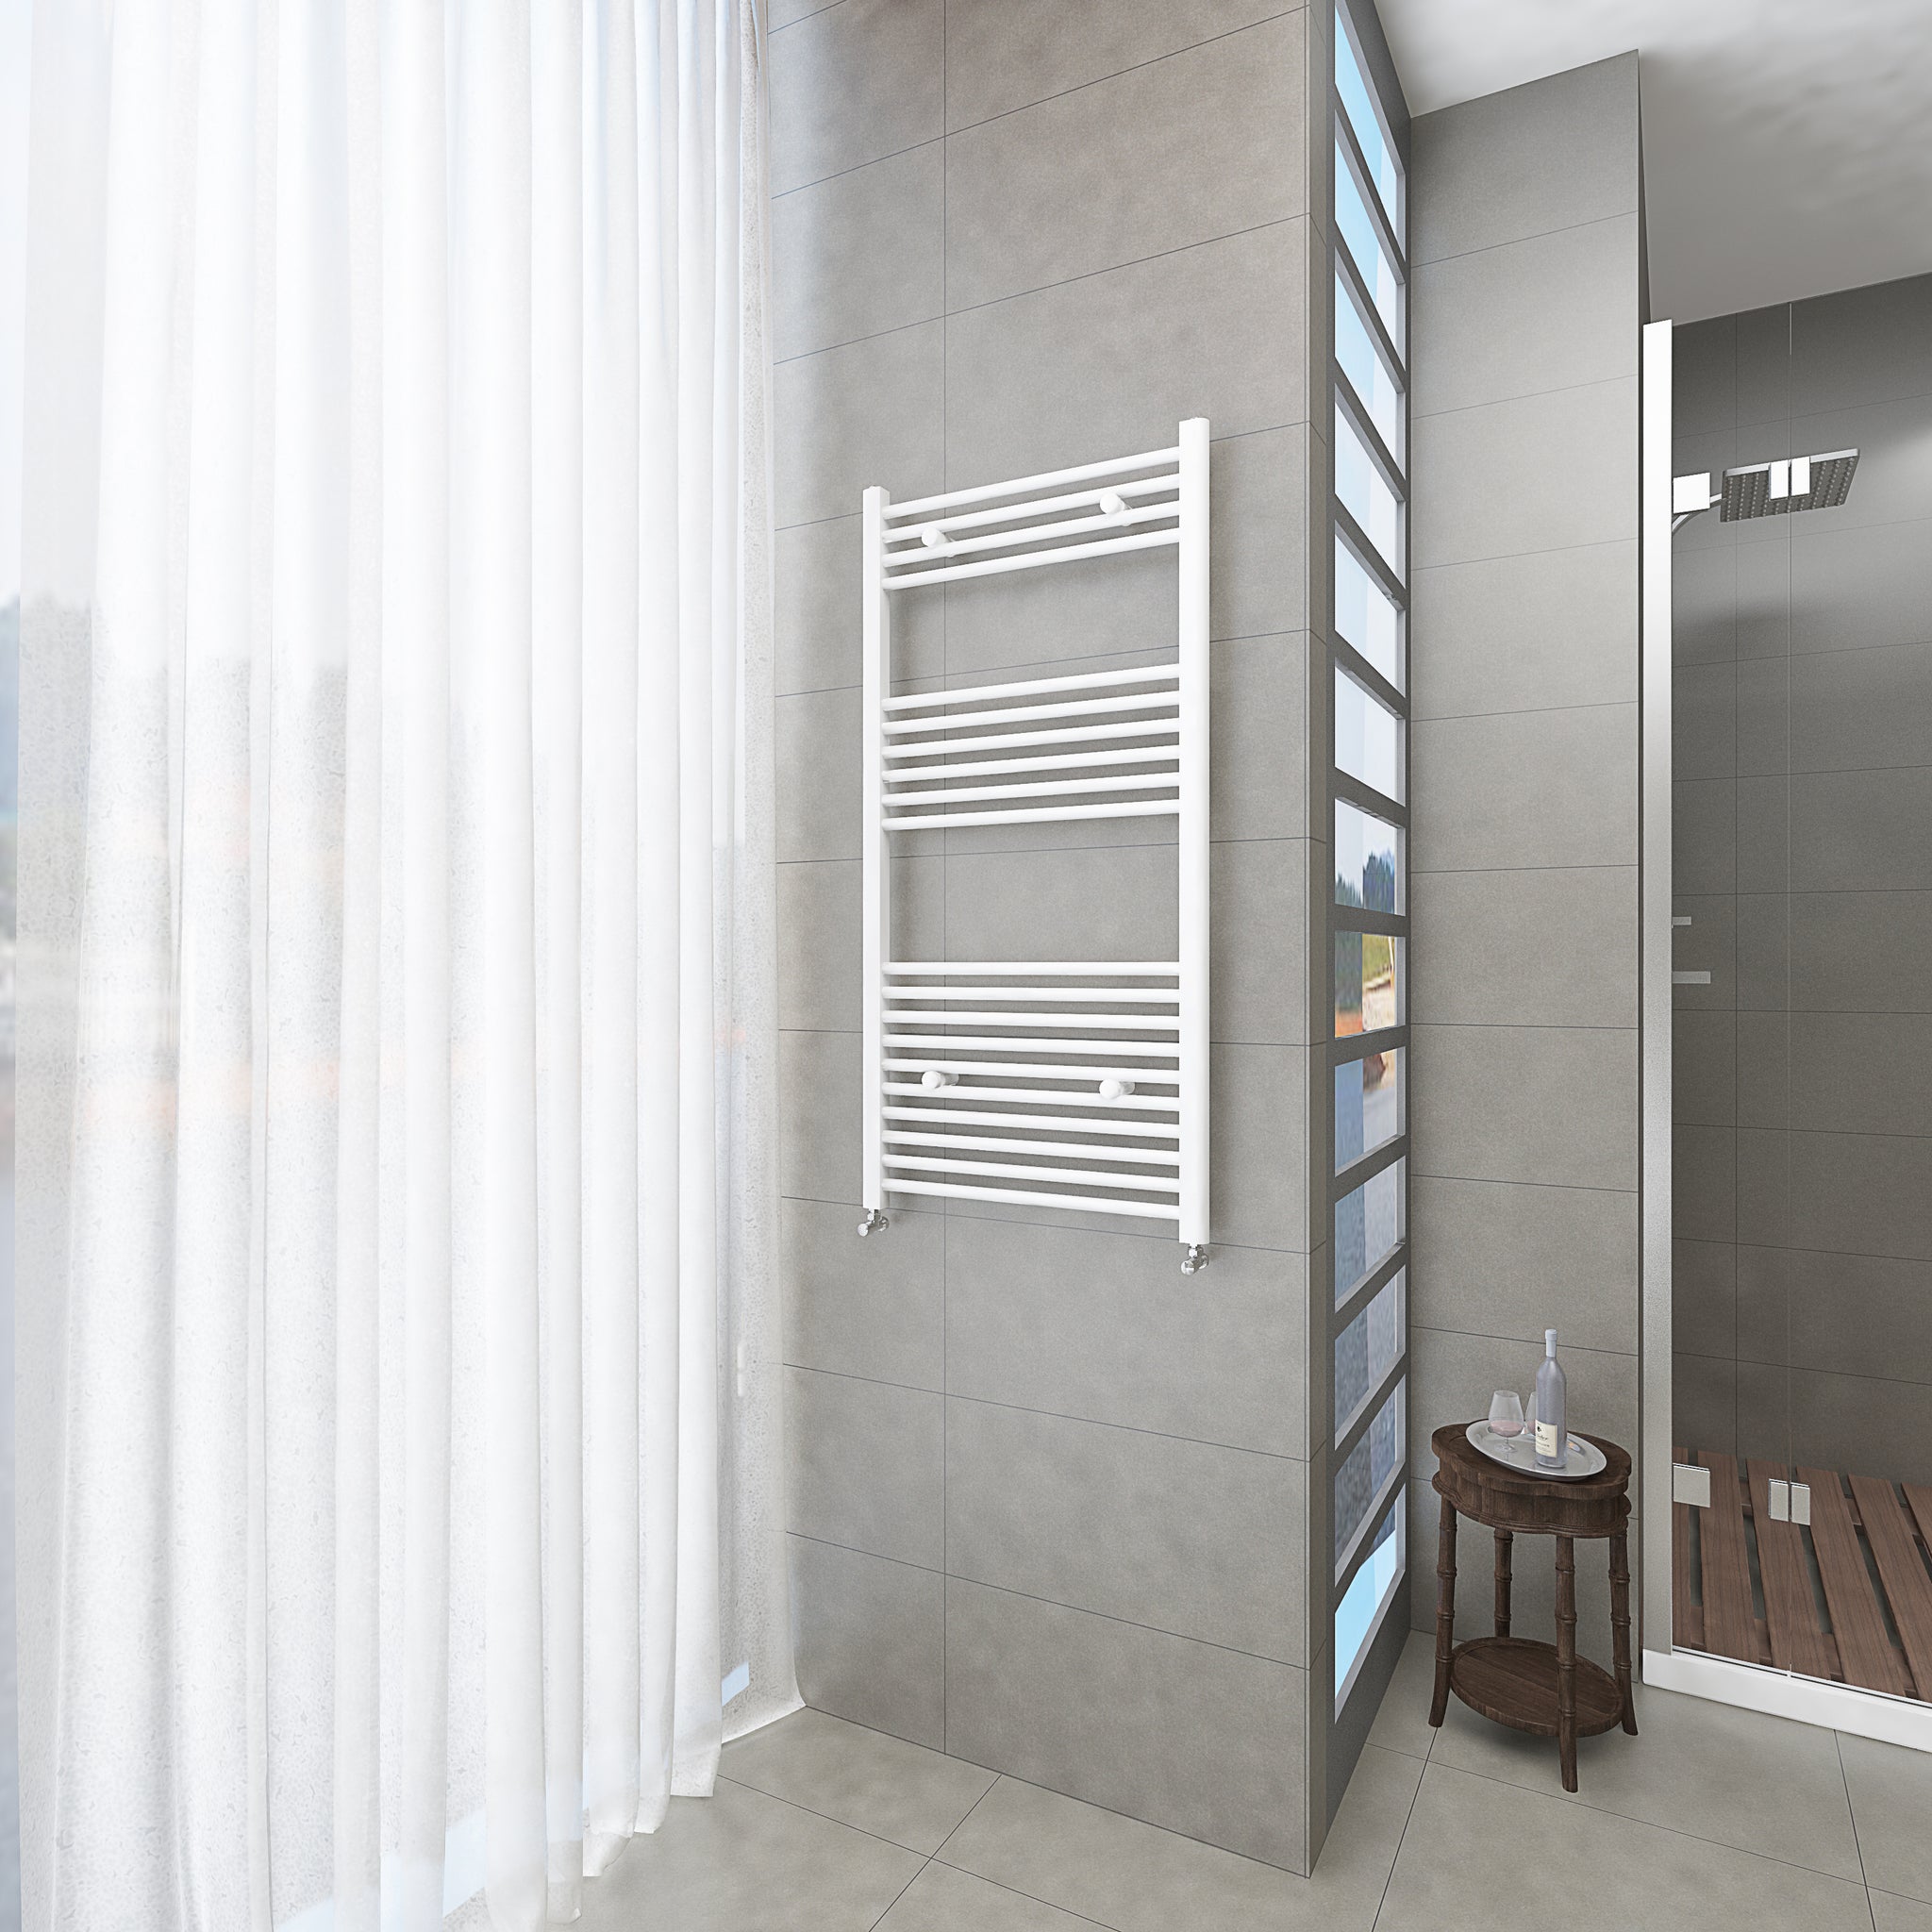 Badheizkörper Weiß - 120x60 CM Heizkörper und Handtuchtrockner in einem - Seitlicher Anschluss - Rauchfreie Kohleheizung für das Badezimmer